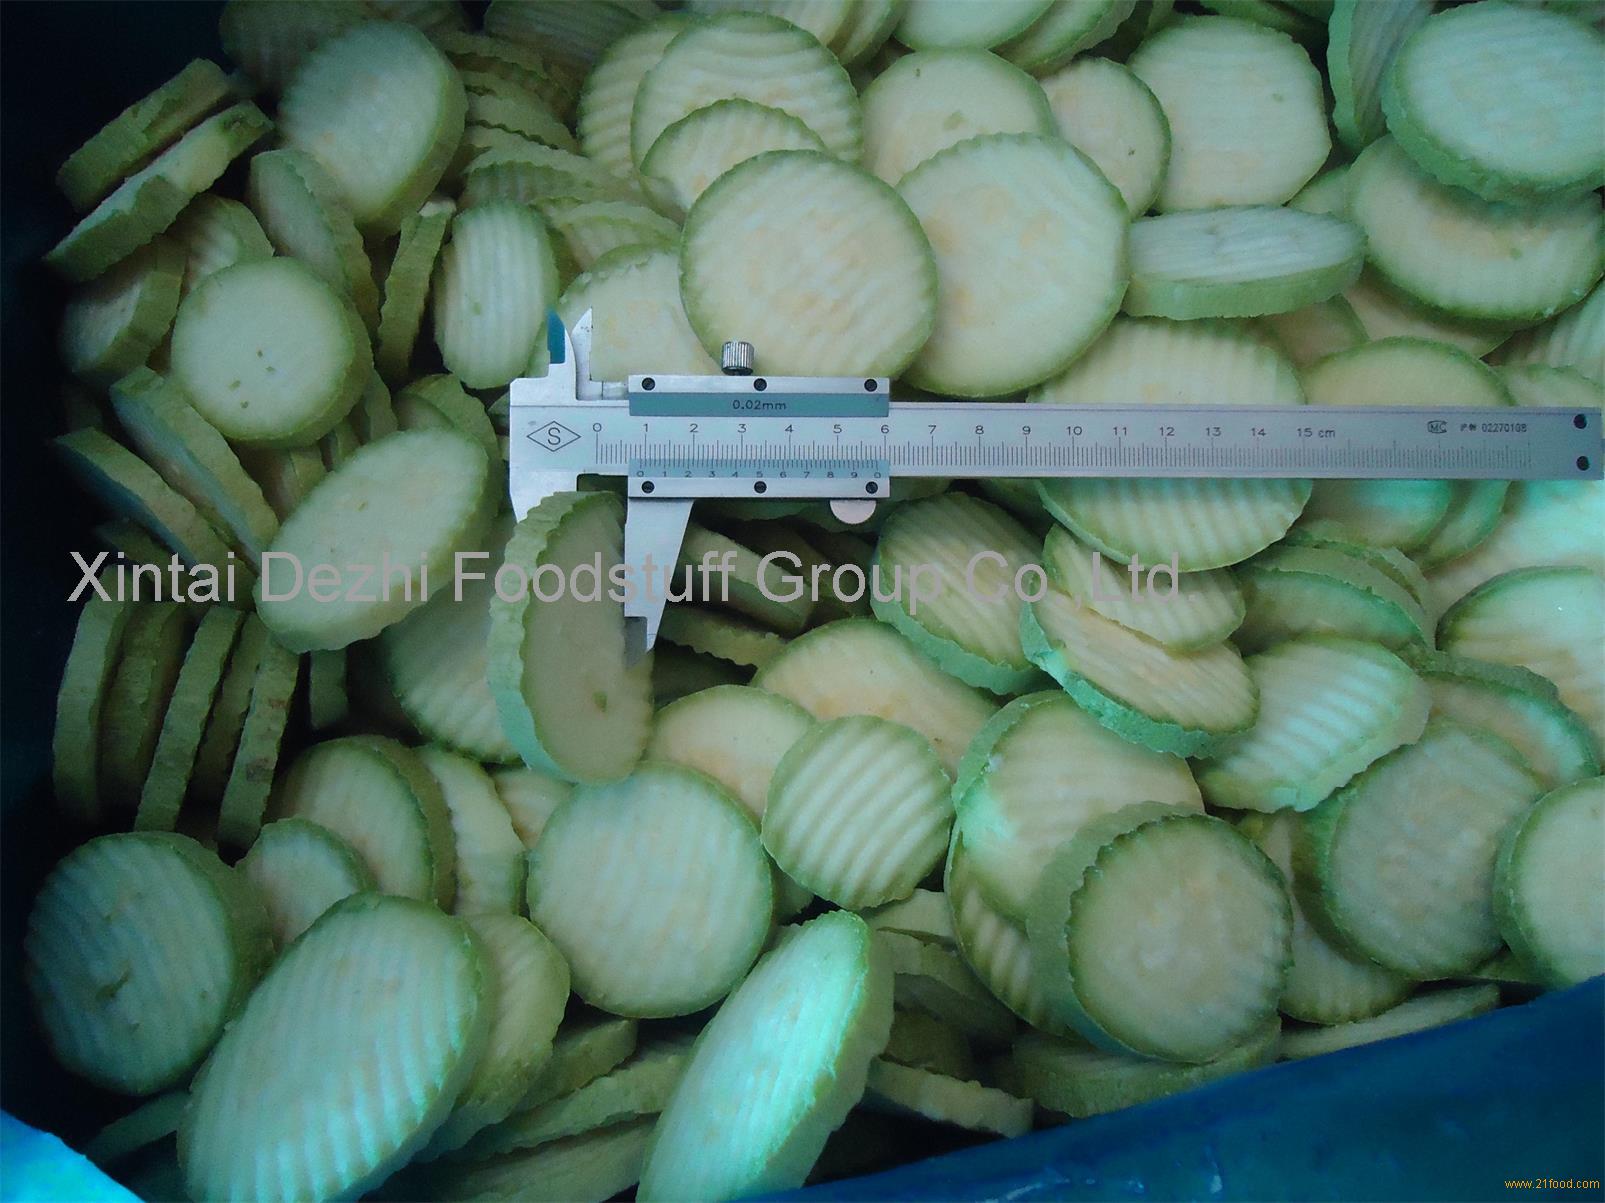 Frozen sliced zucchini